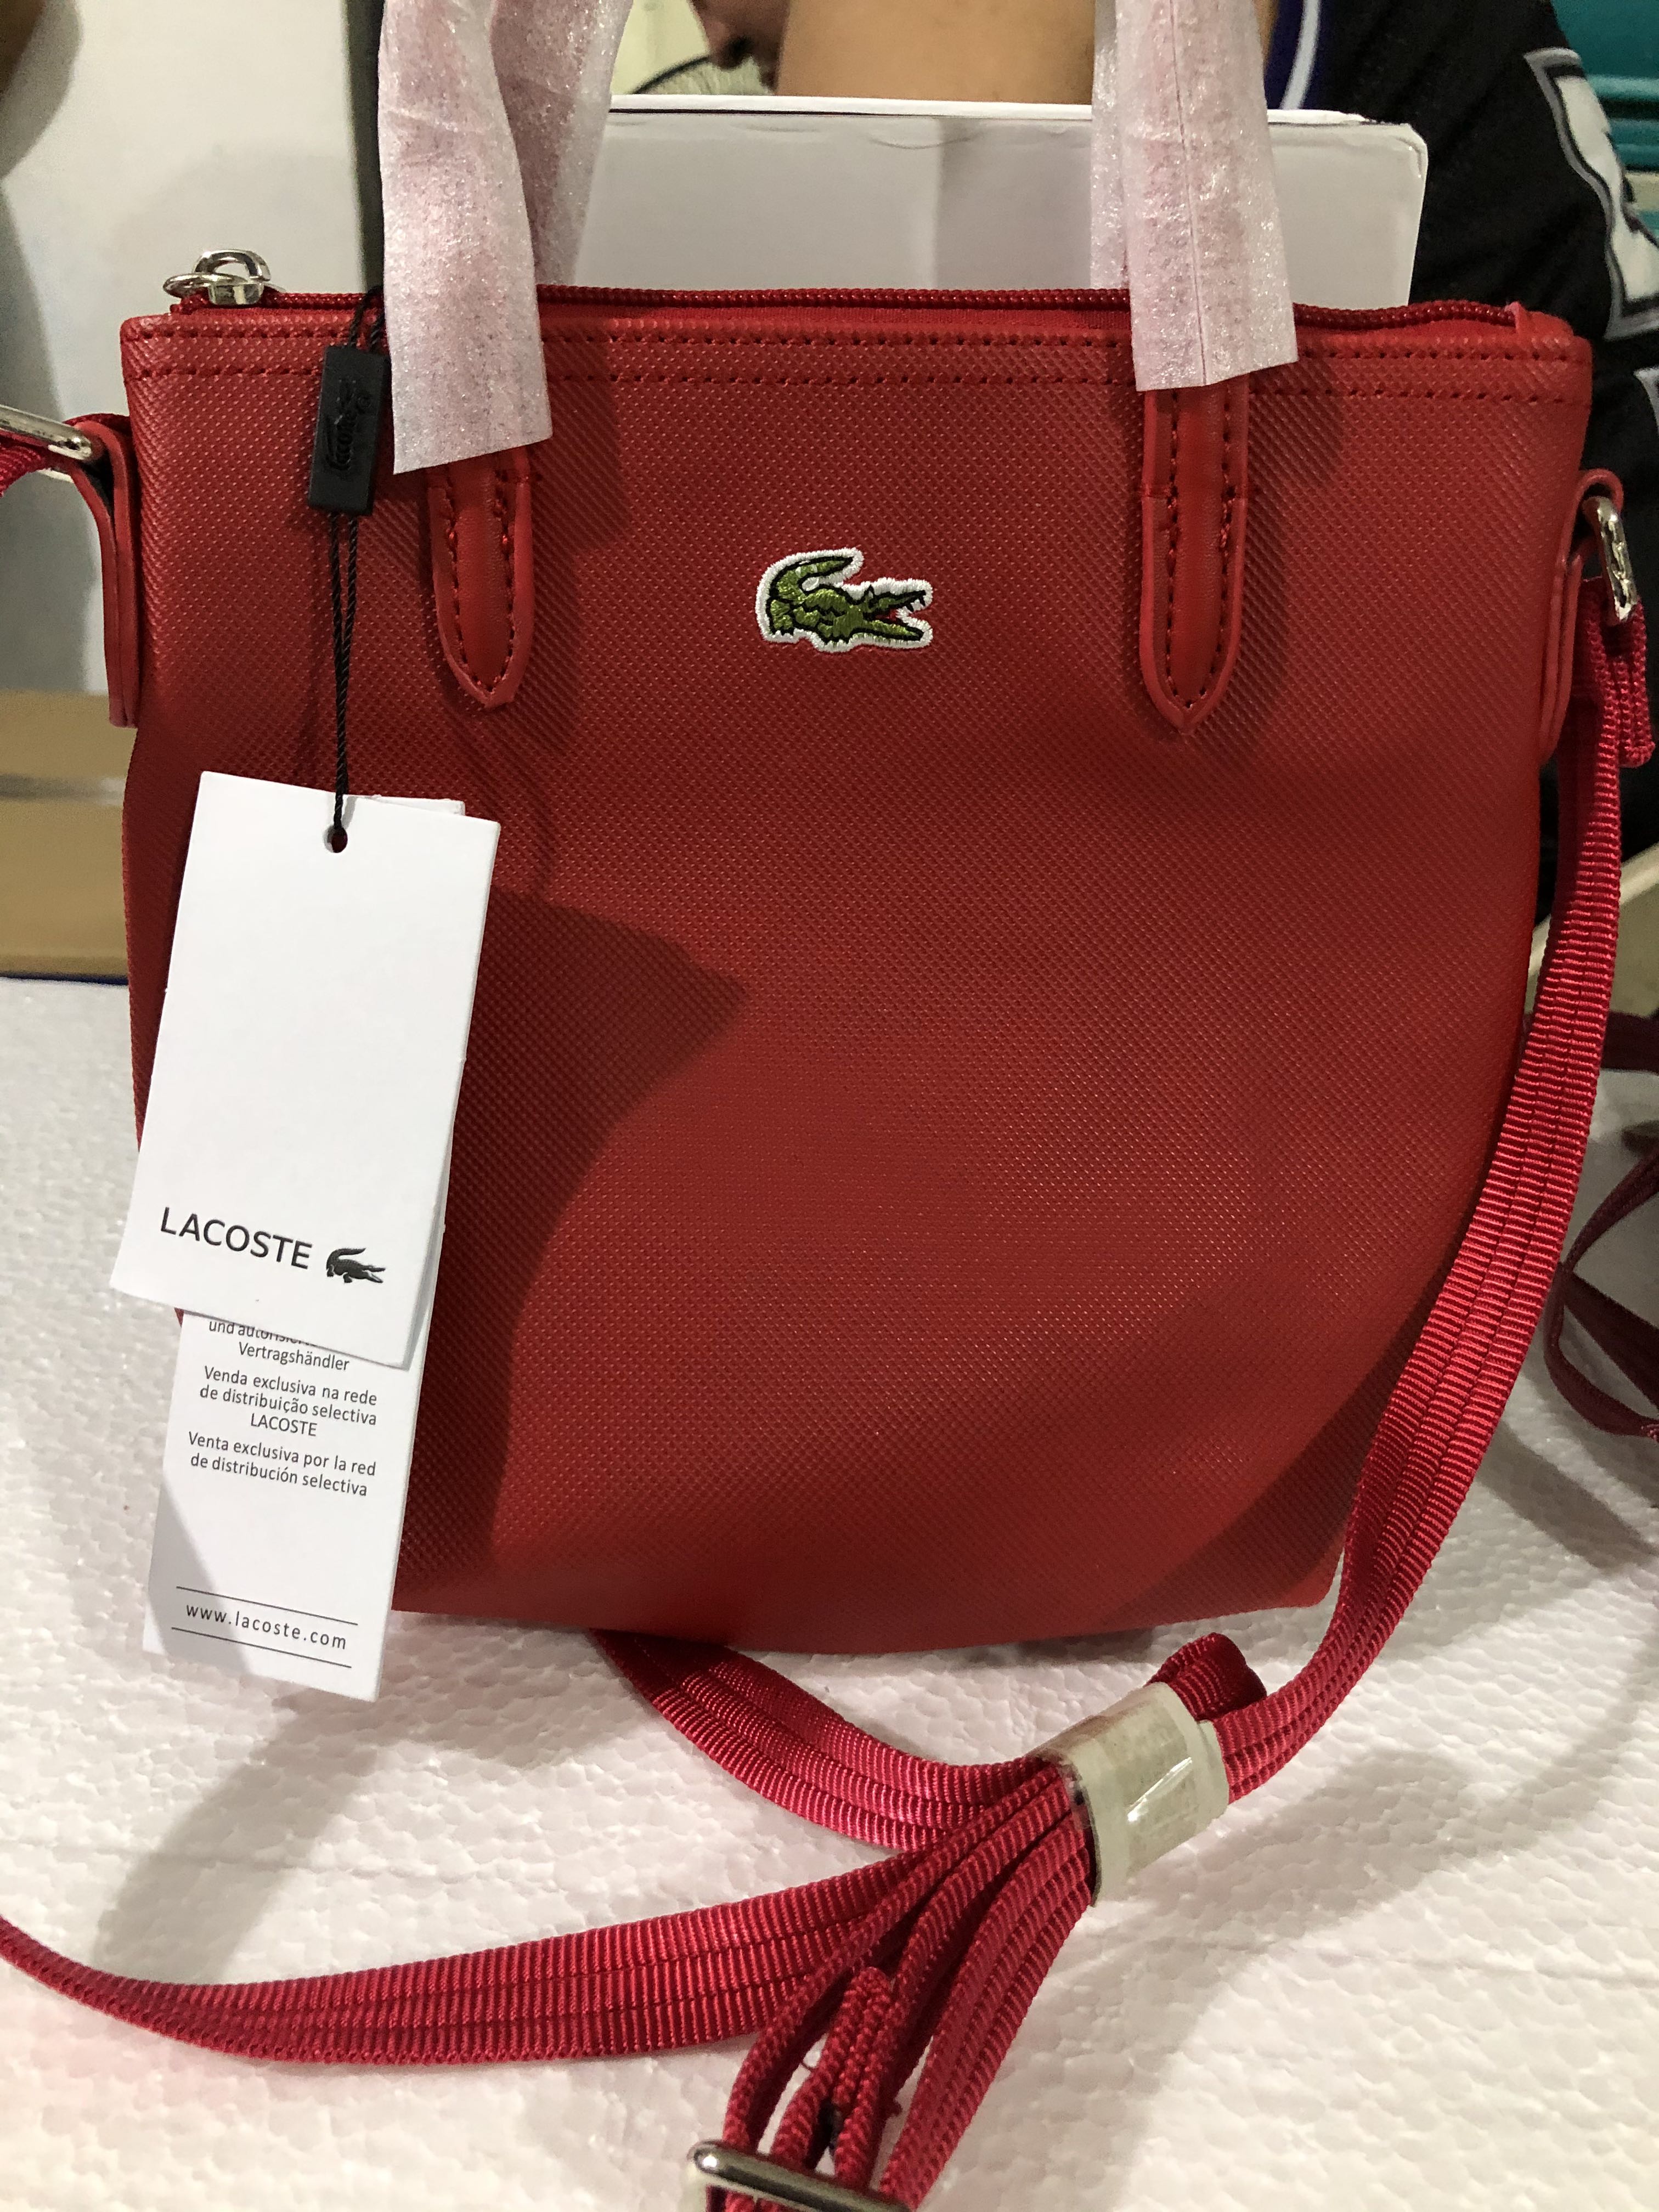 lacoste sling bag for women